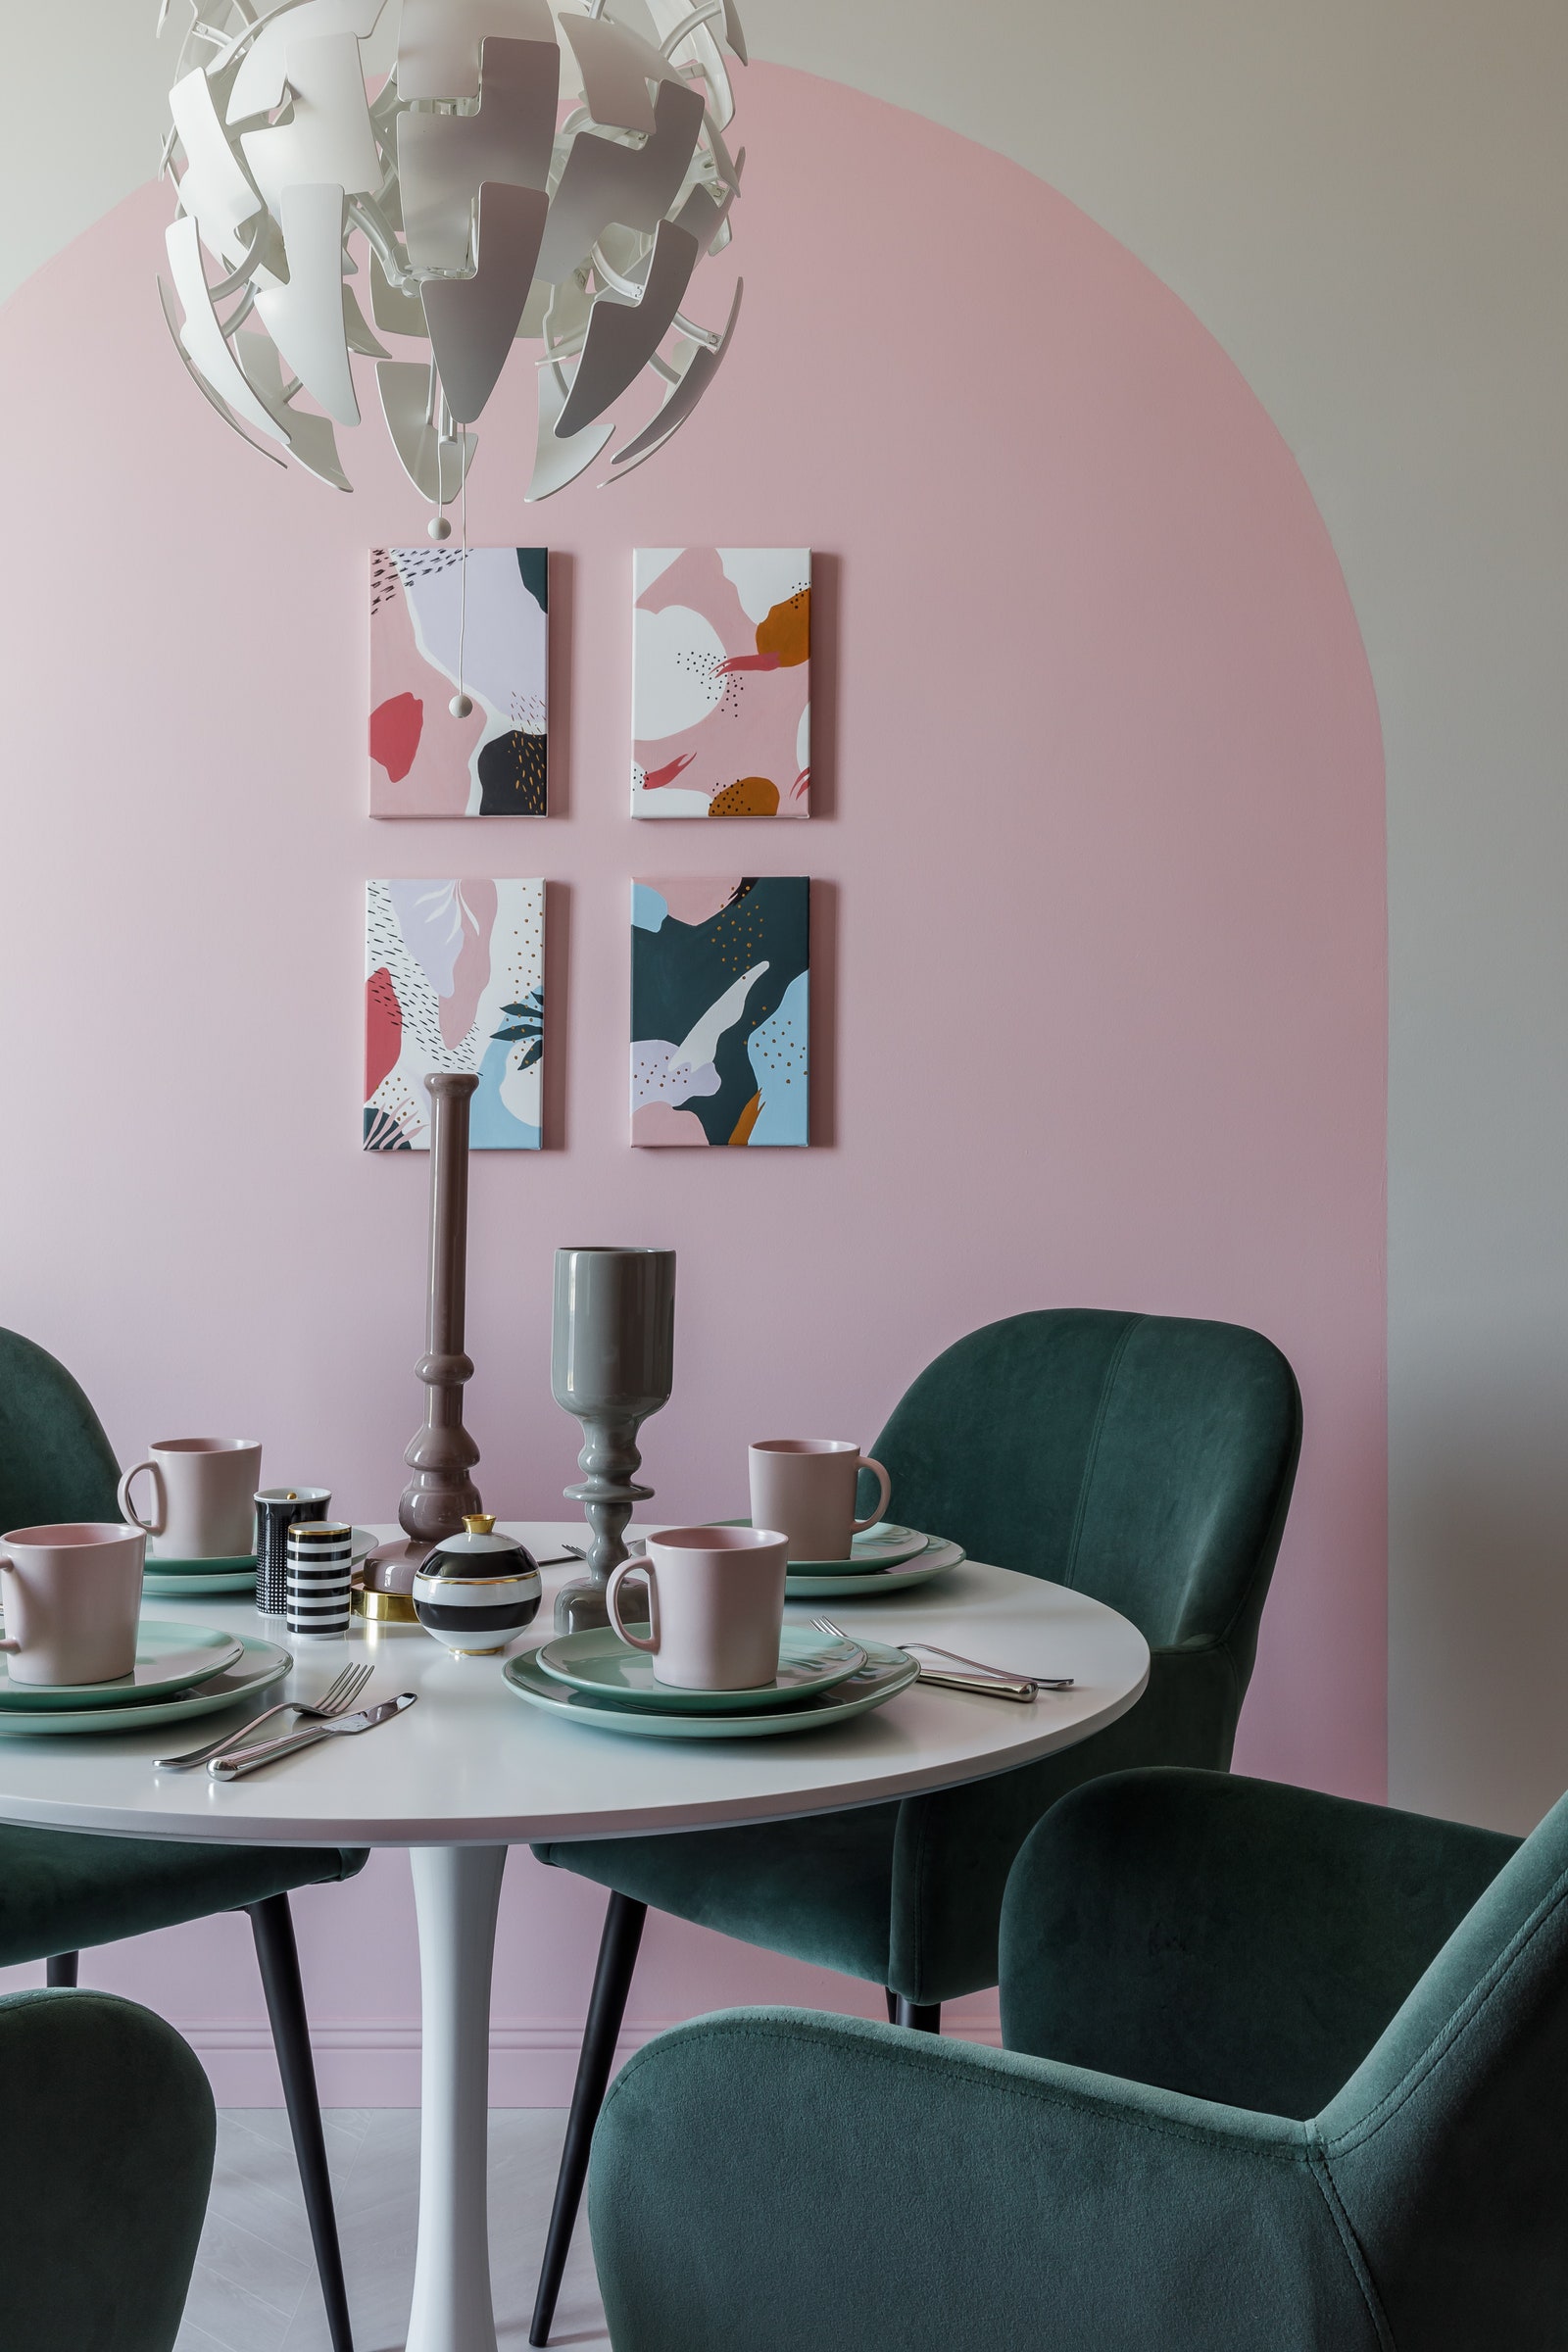 Фрагмент кухни. Стол Tulip Eero Saarinen style полукресло Humble люстра IKEA подсвечник Bosa картины художницы Юлии...